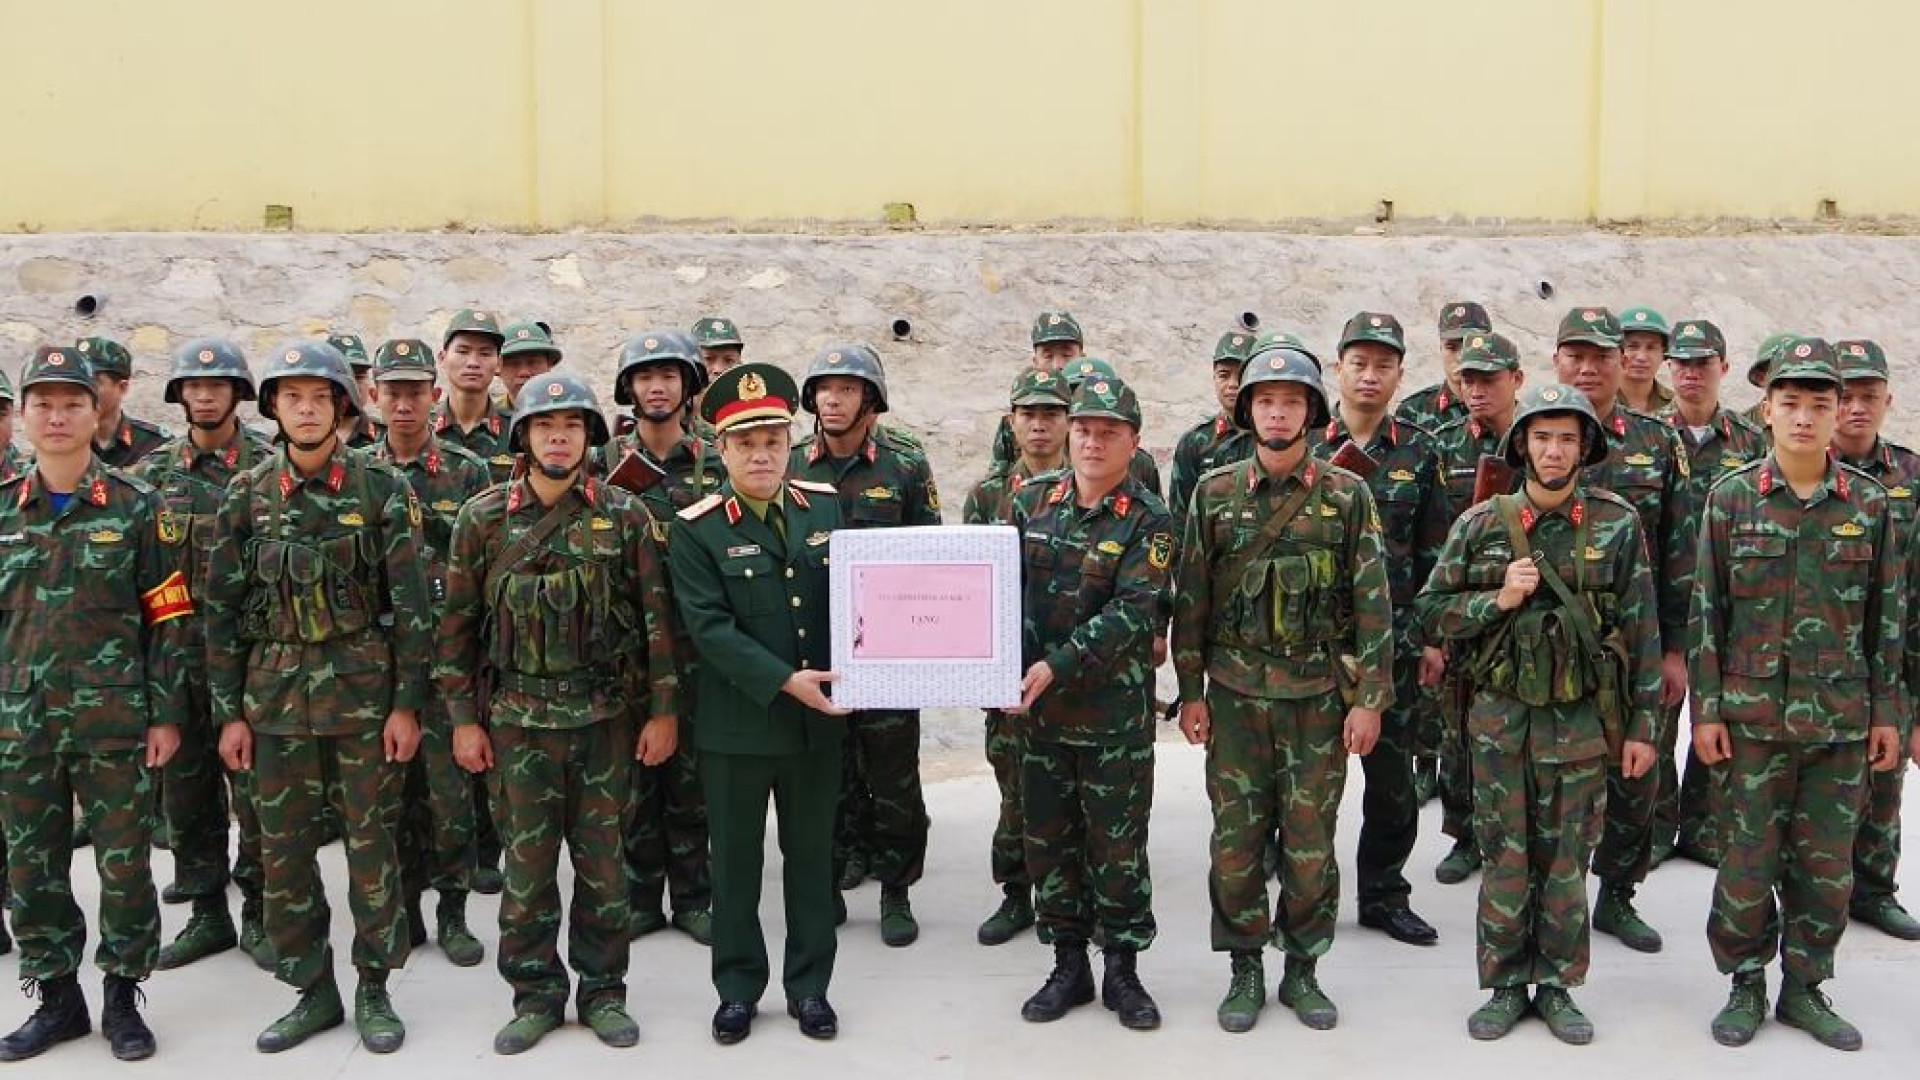 Đoàn công tác Quân khu kiểm tra tại Lữ đoàn 405 và động viên đội tuyển tham gia Chương trình “Quân khu số 1 - Thách đấu”